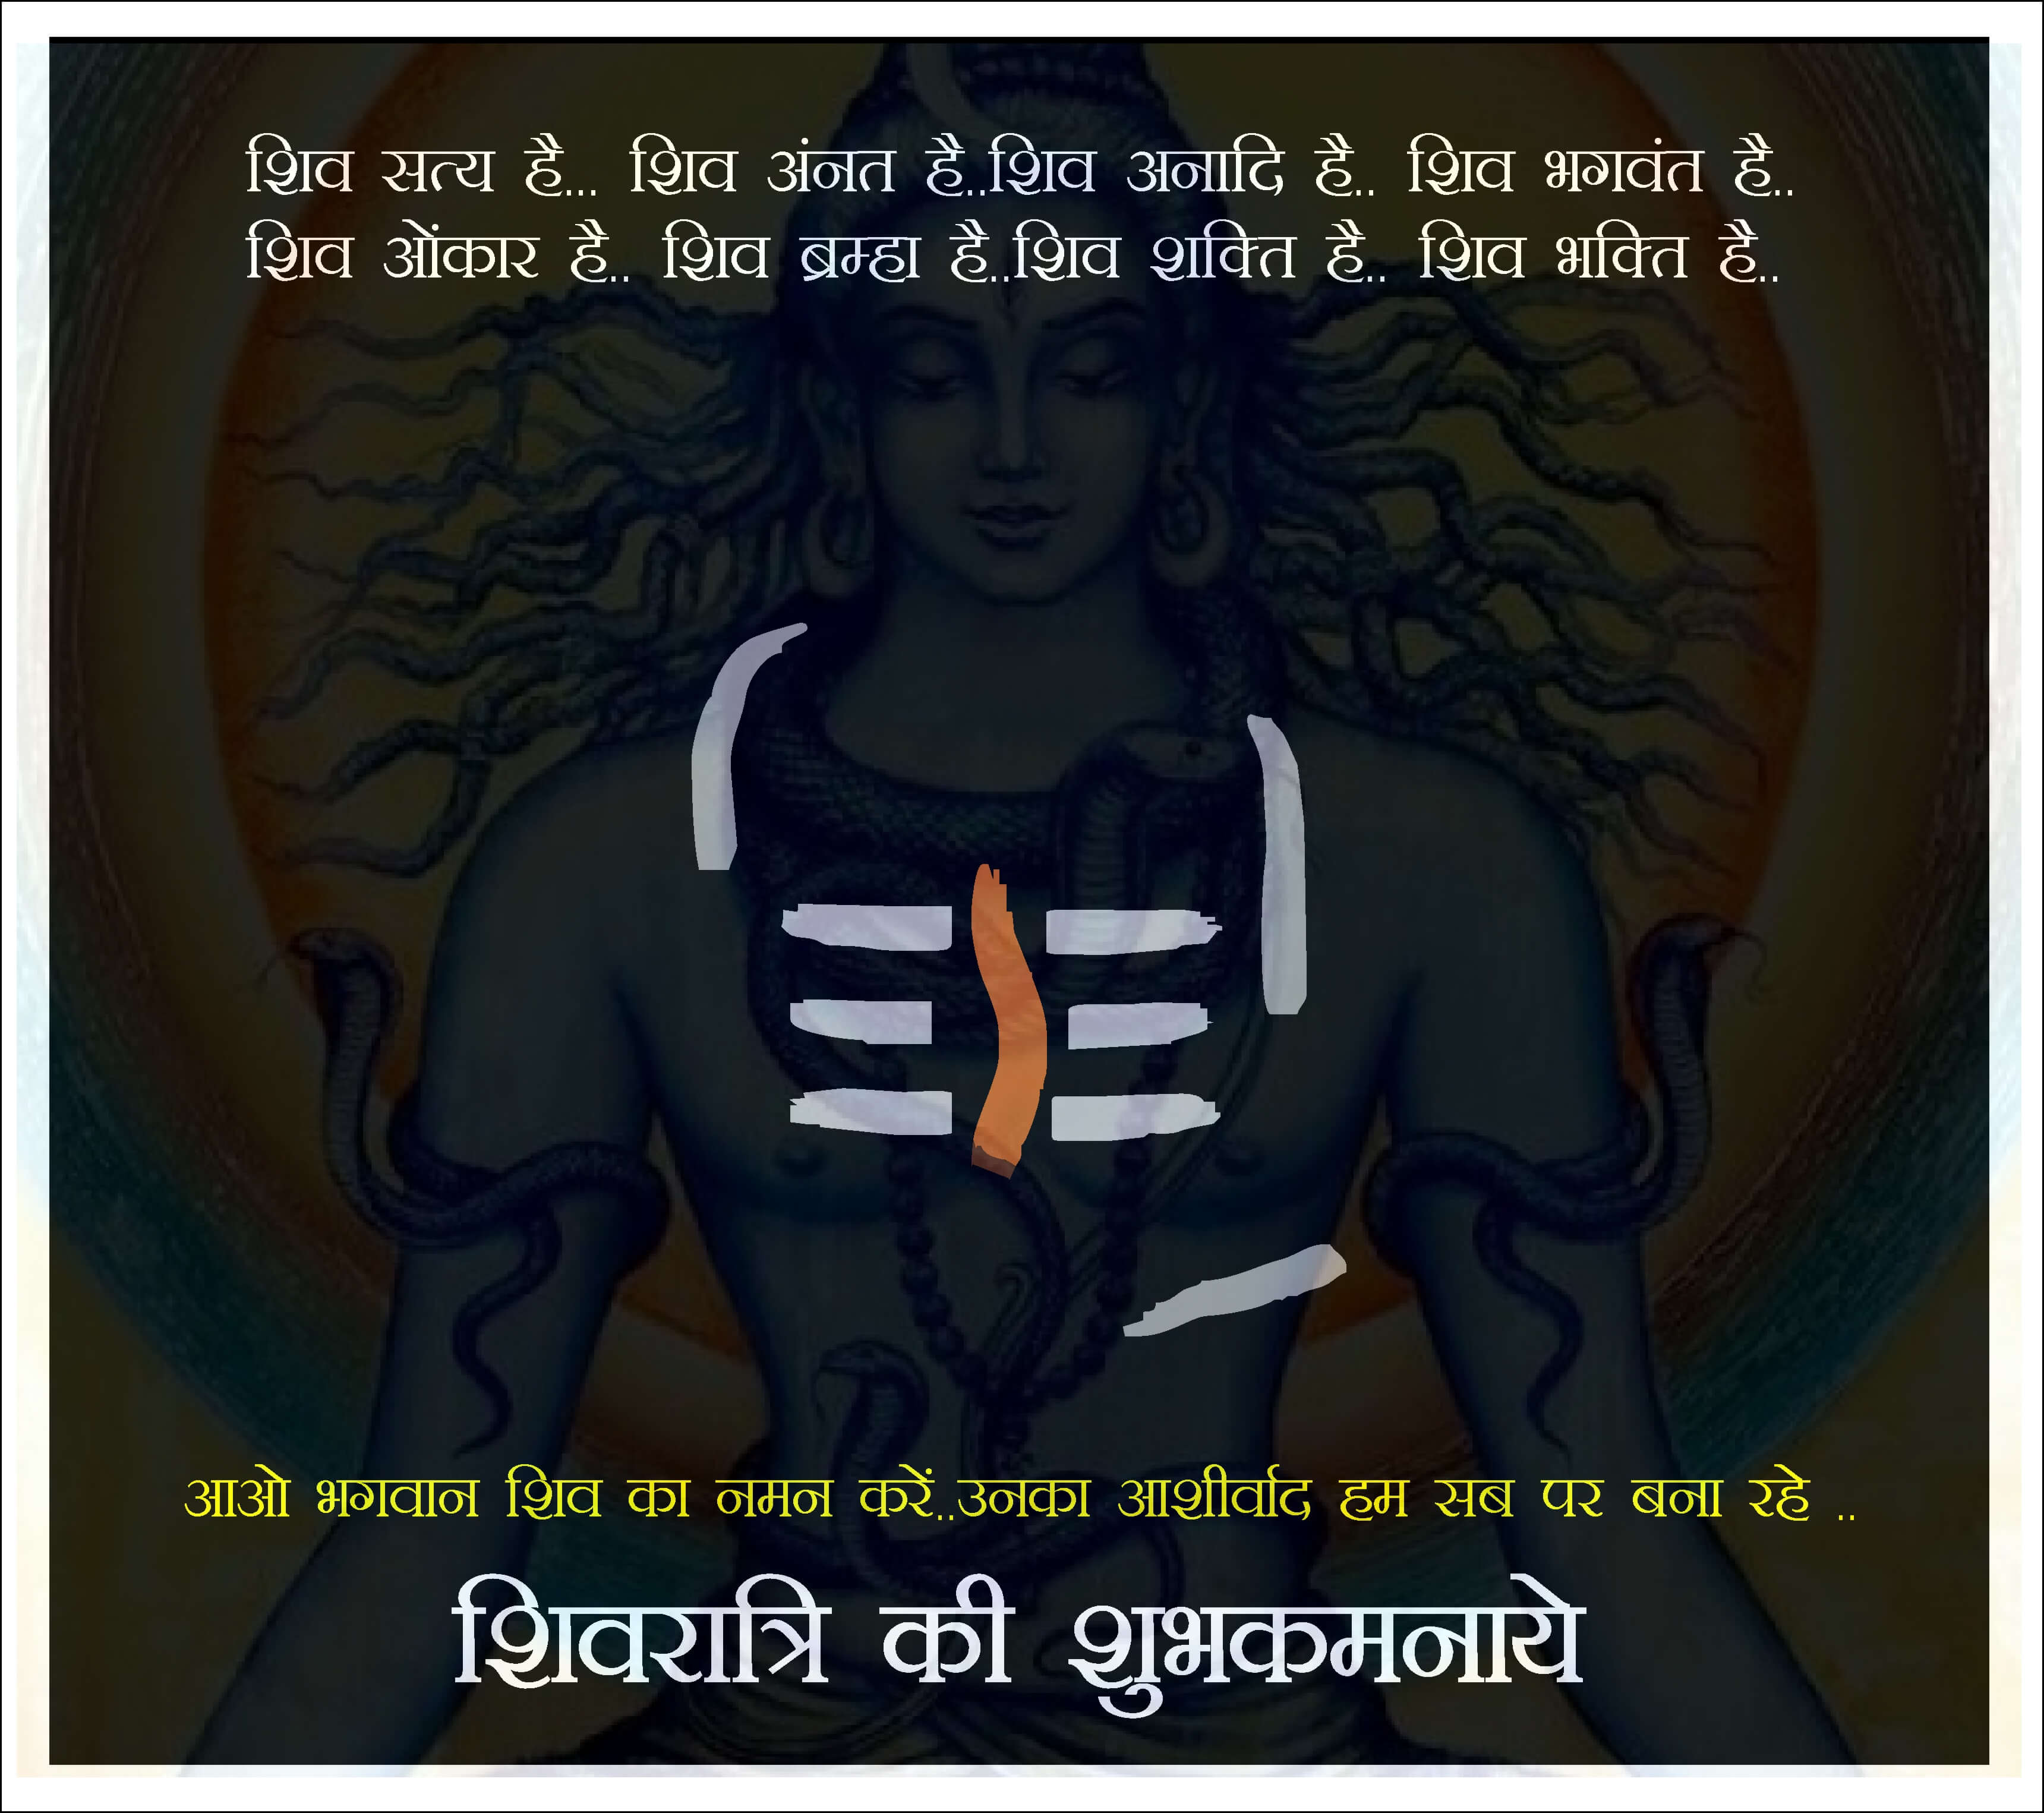 Mahashivratri_15 | eGreetings Portal